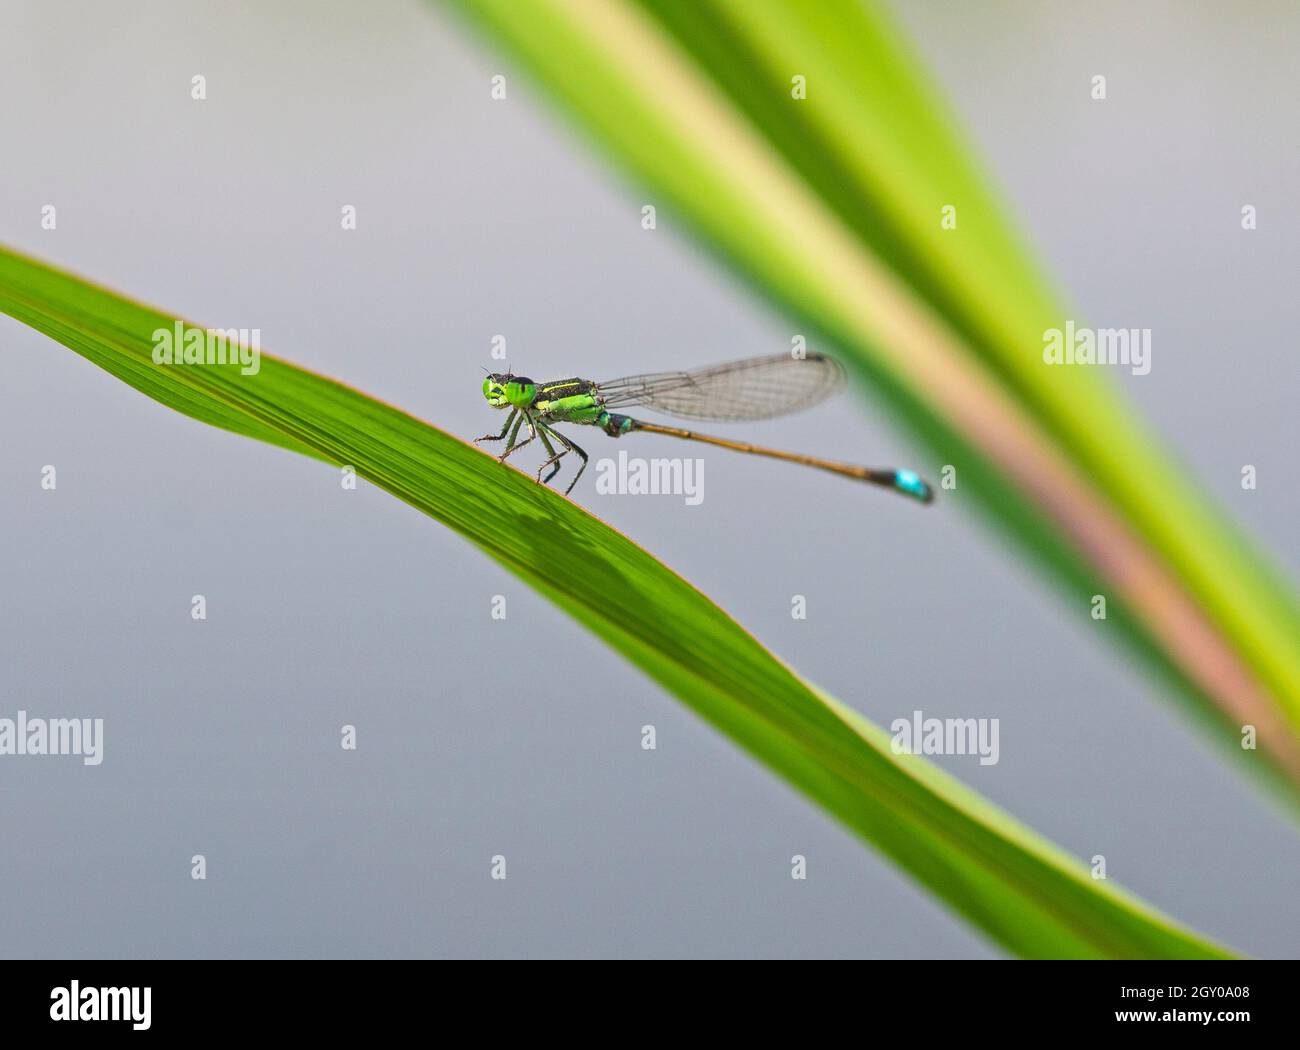 Primer plano macro detalle de cola pequeña libélula onychogomphus forcpata encendido hoja verde en el jardín Foto de stock